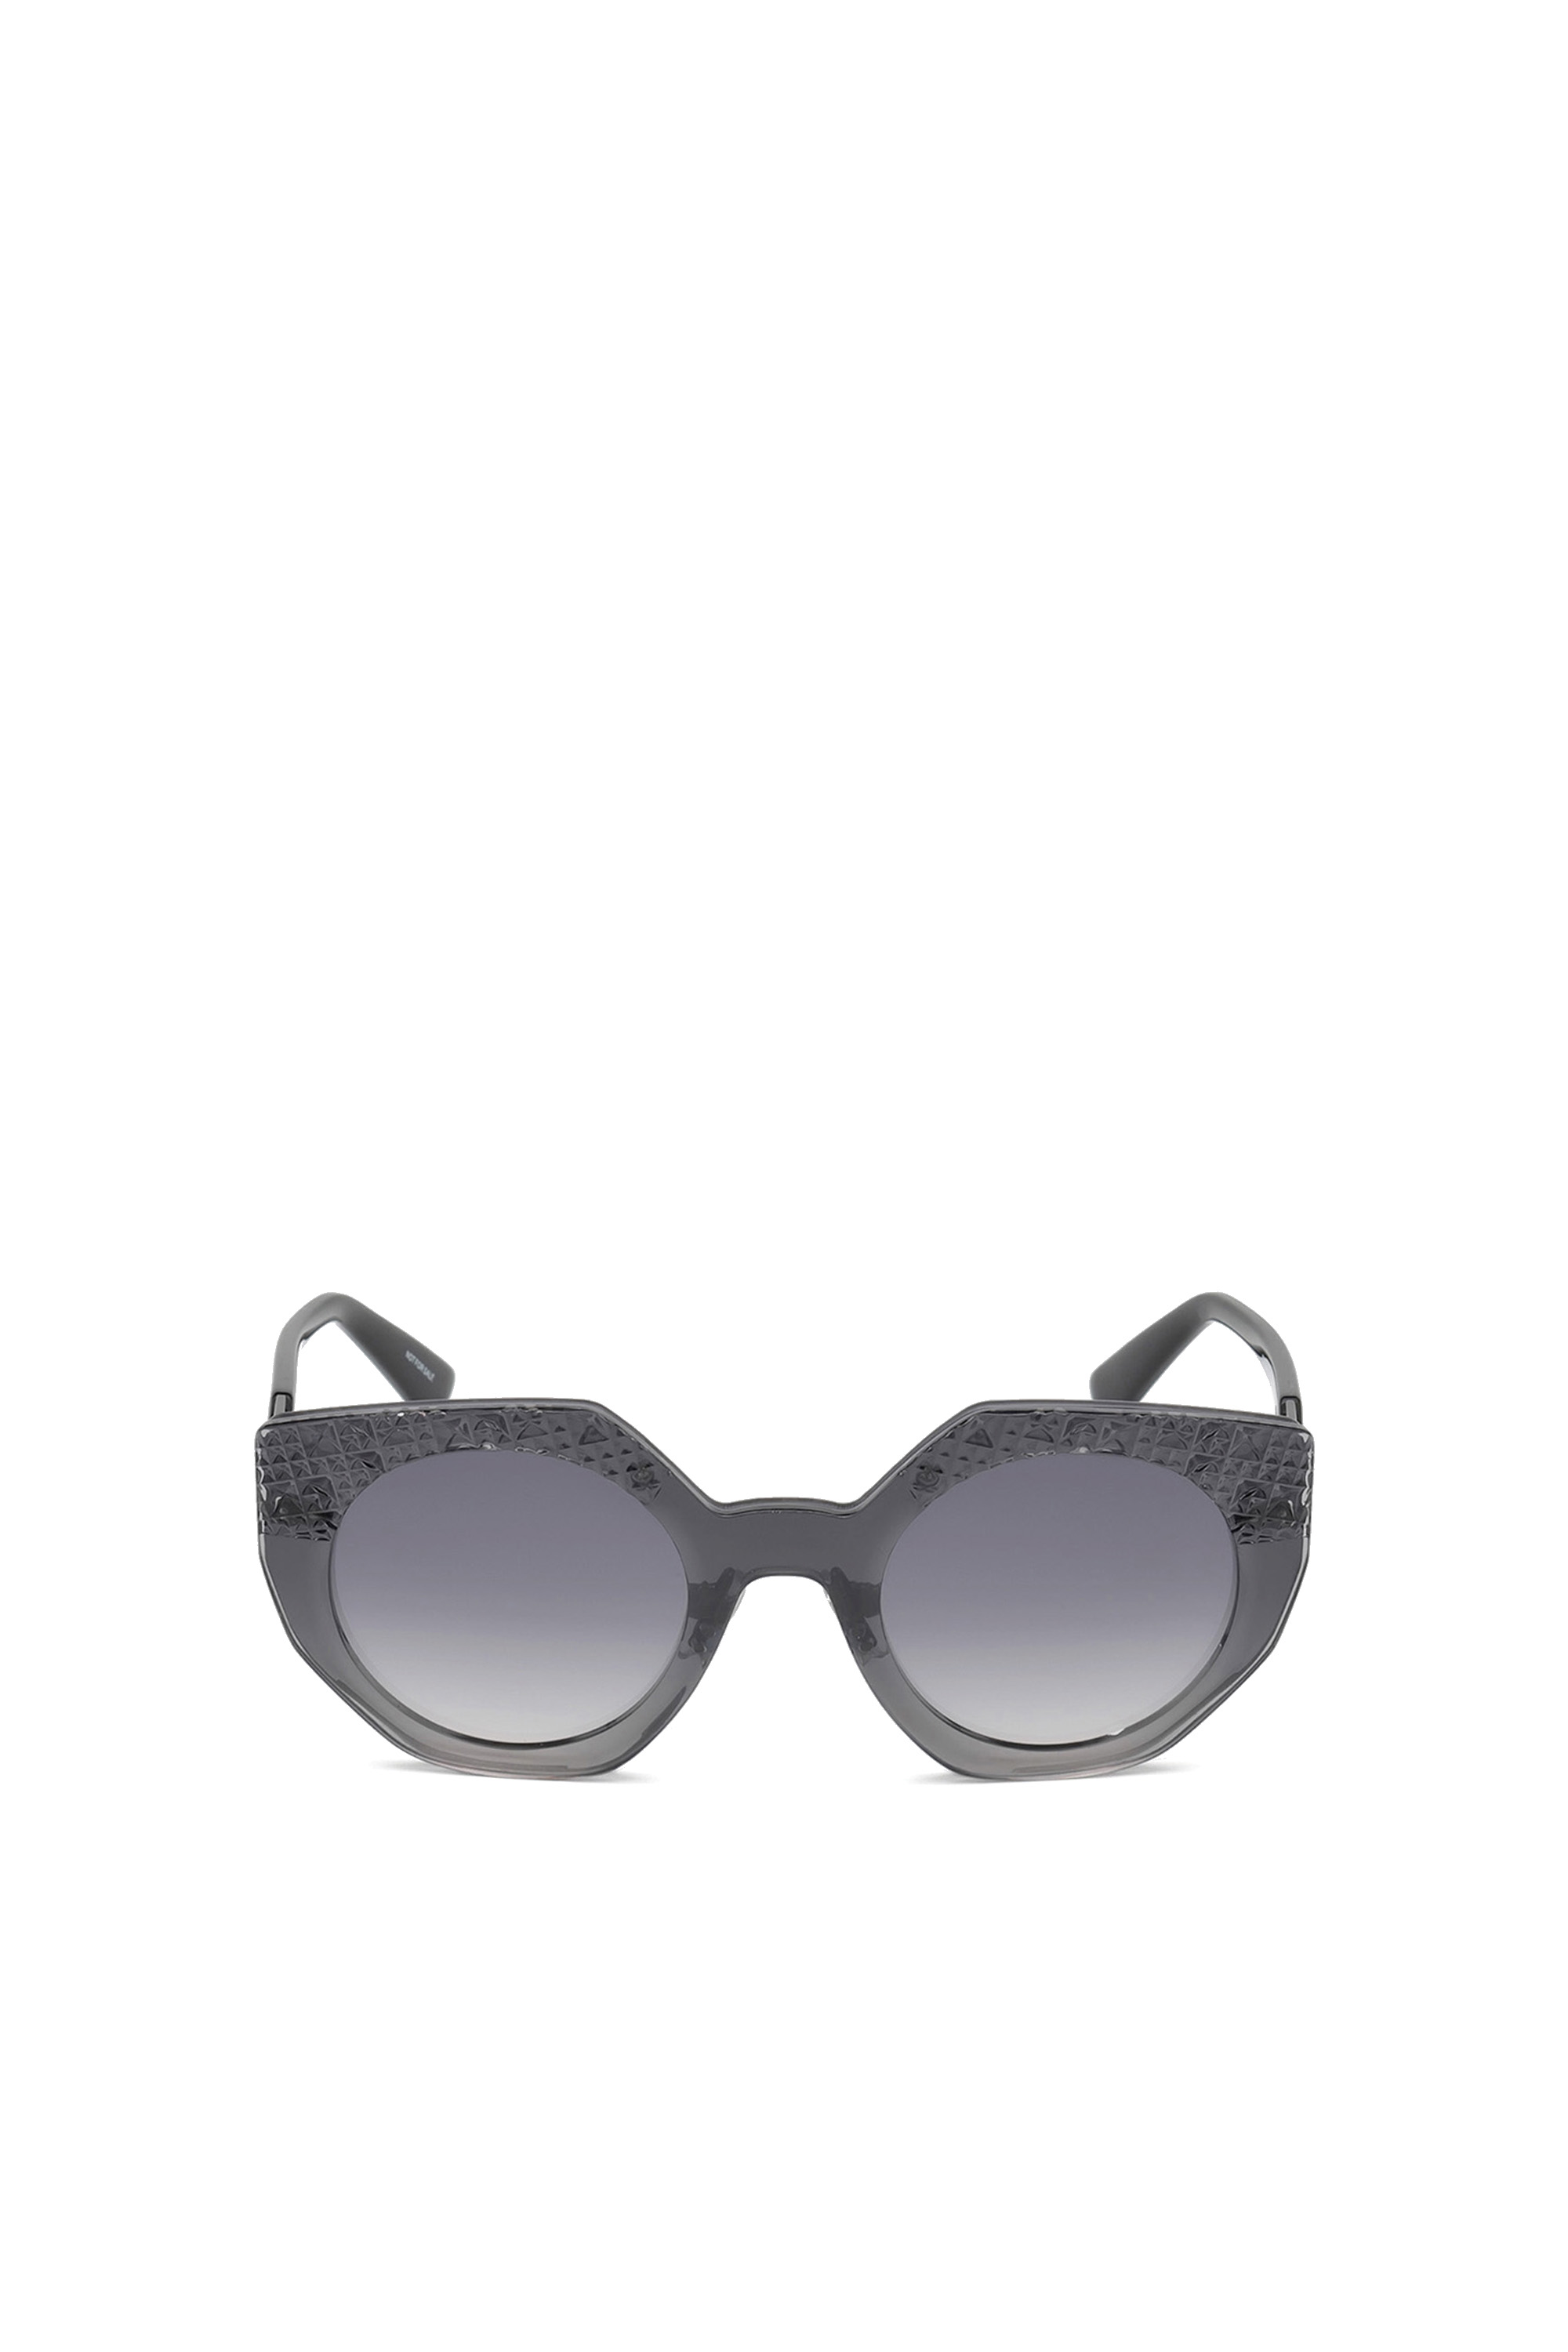 Diesel - DL0258, Woman Geometric shape eyewear in Grey - Image 1